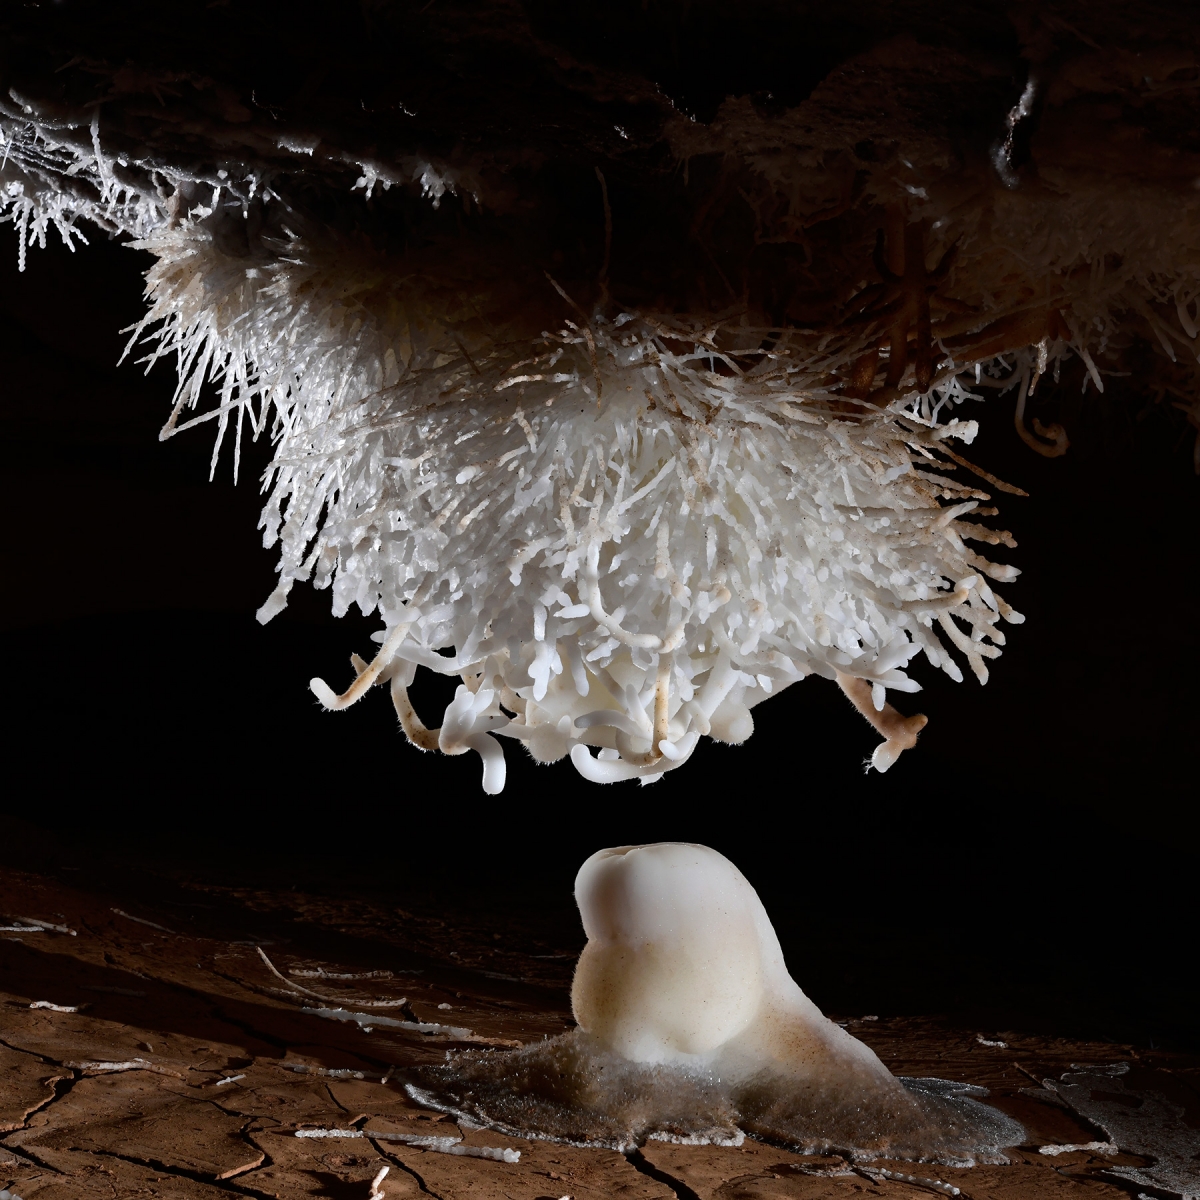 Breezeaway Cave (USA - Colorado) - Gros bouquet échevelé d'aragonite au plafond ("Tesla Coil") surmontant une stalagmite 